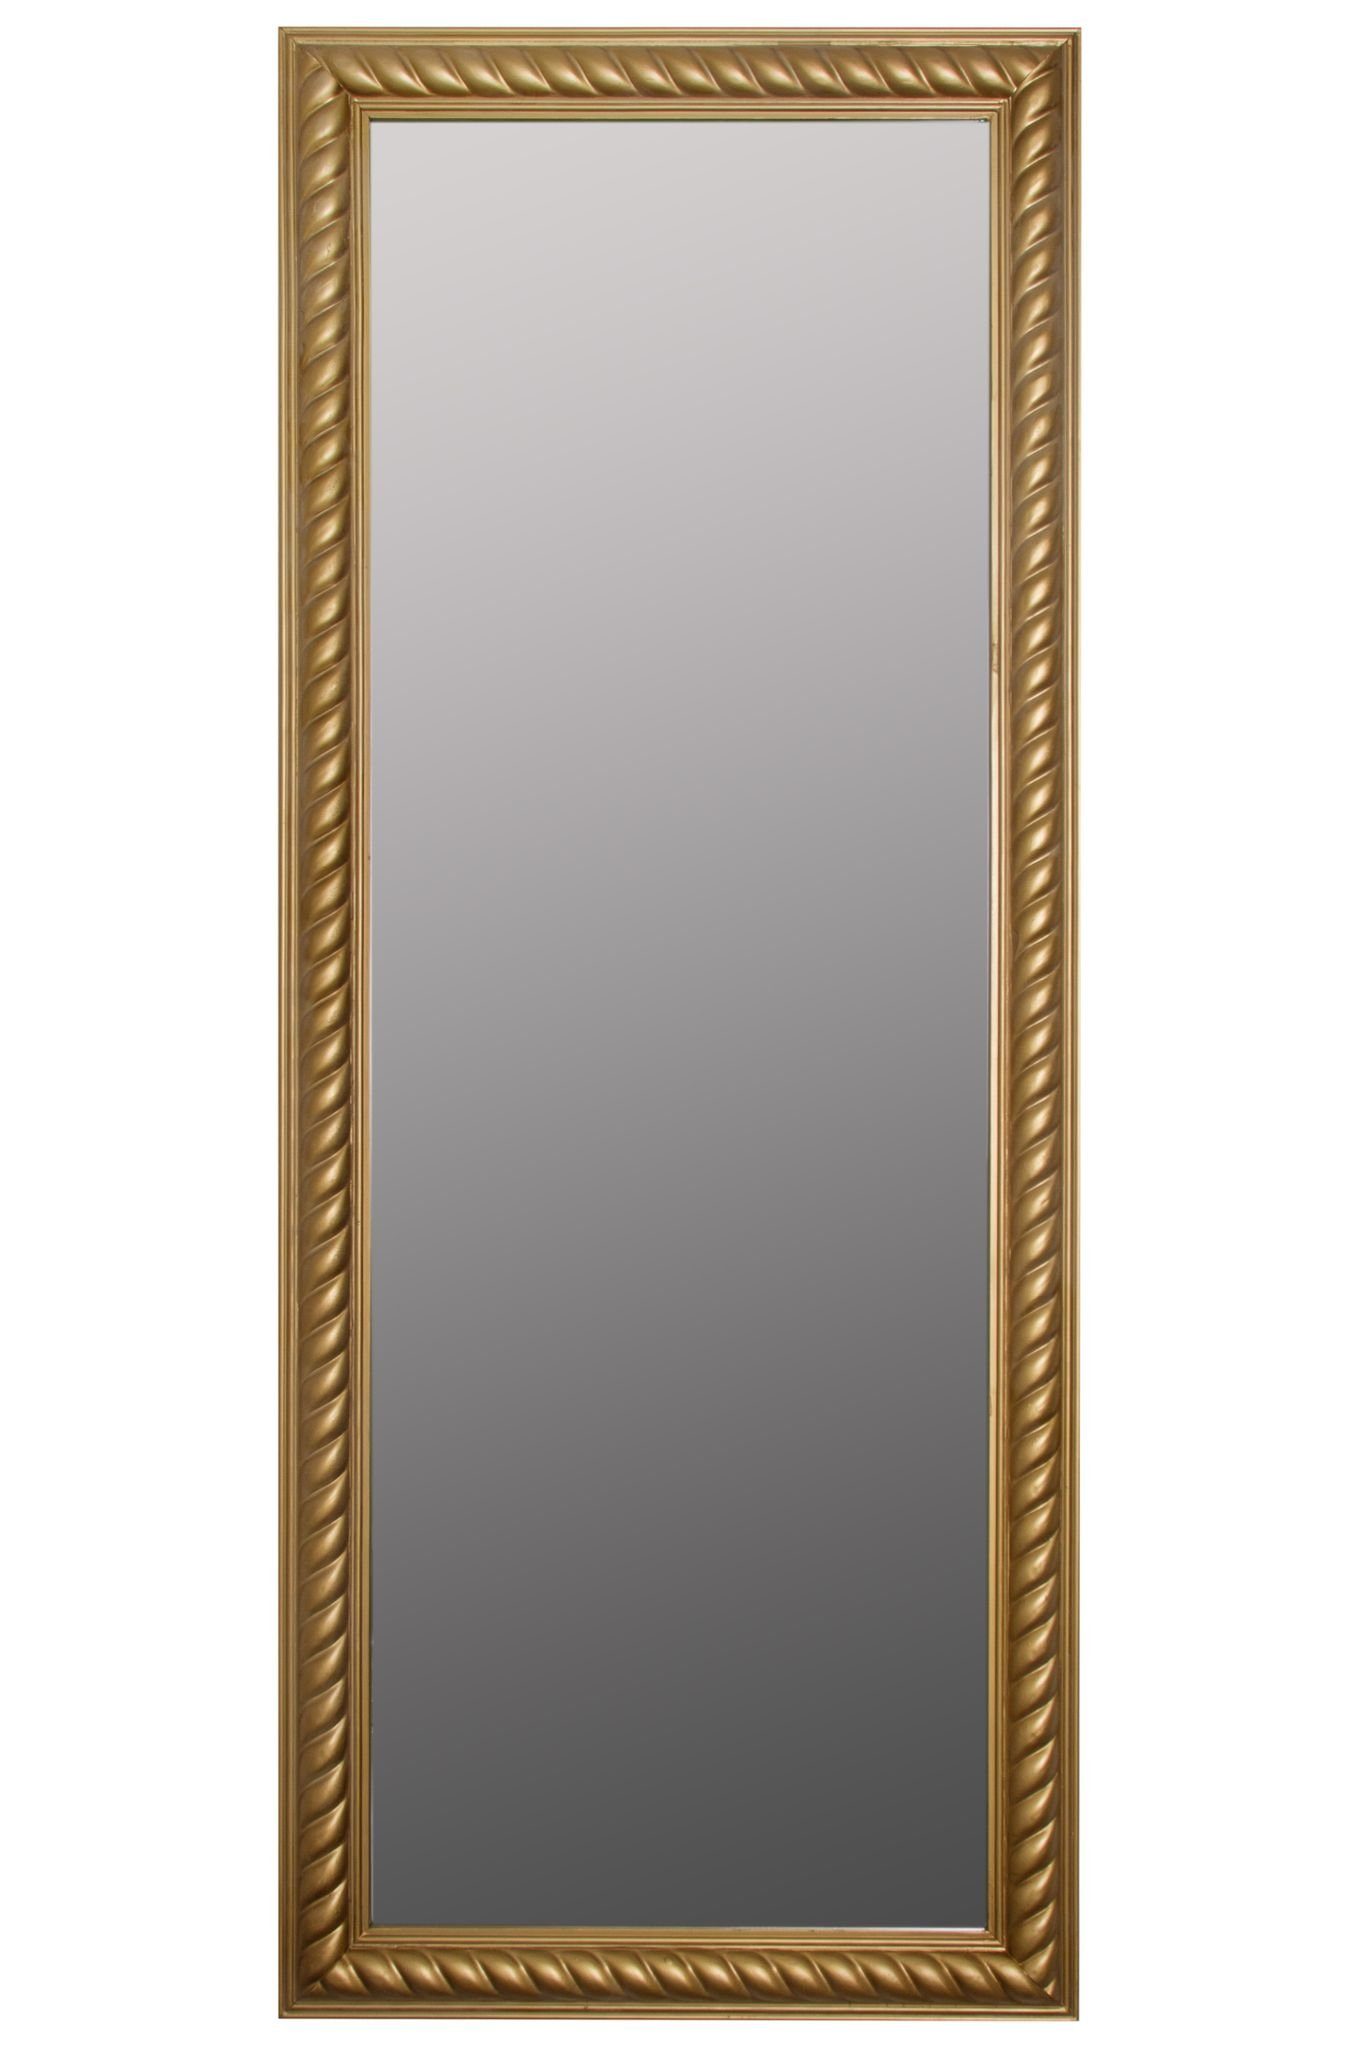 elbmöbel Wandspiegel Wandspiegel Spiegel Badezimmerspiegel, Wandspiegel: Kordelrahmen 60x150x7 cm holz gold vintage gold antik | gold